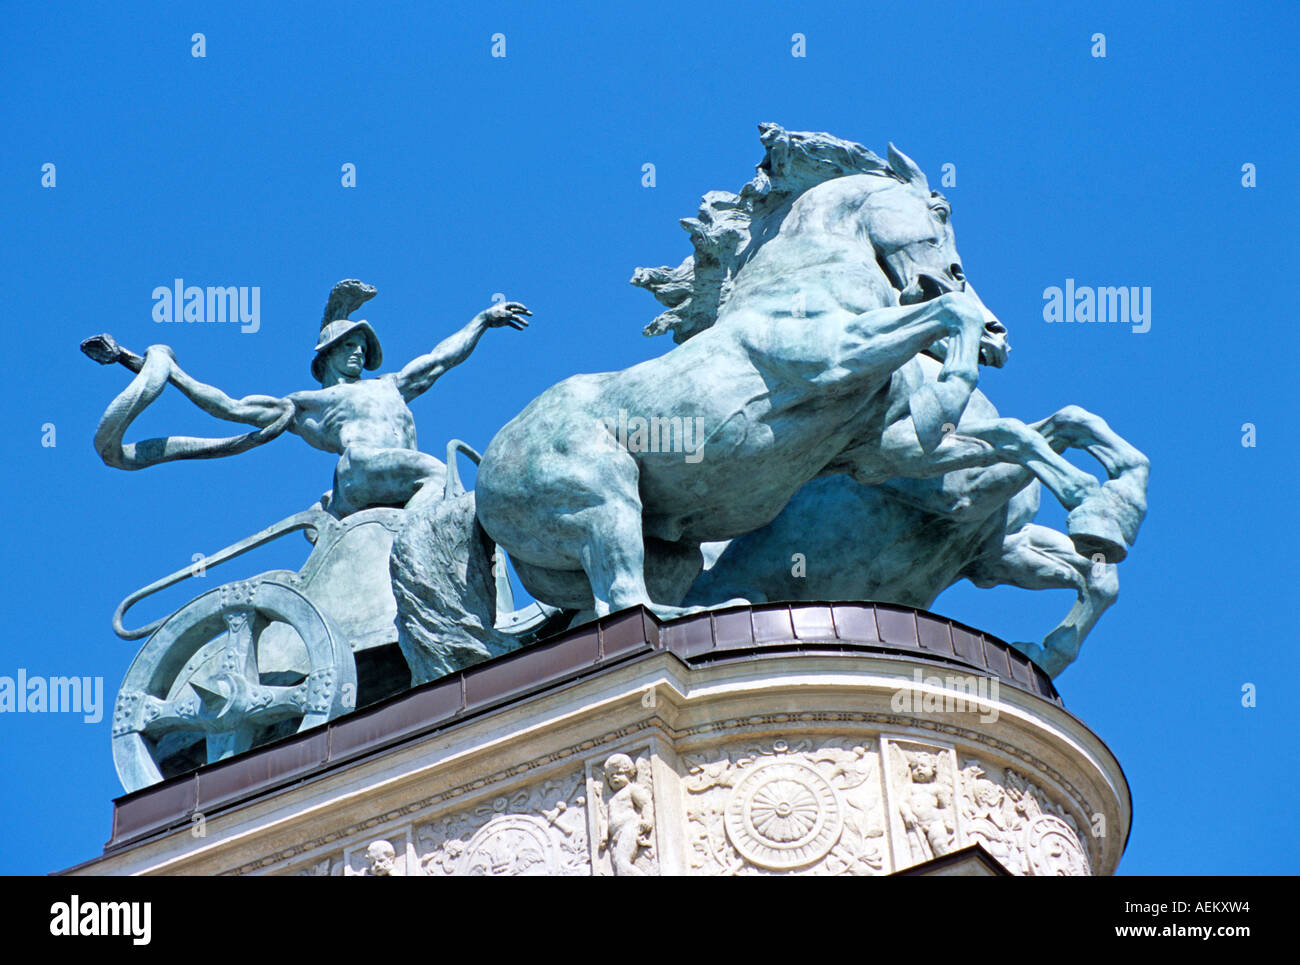 Estatua en la parte superior de la columnata, parte del Monumento del Milenio, Plaza de los Héroes, Budapest, Hungría Foto de stock